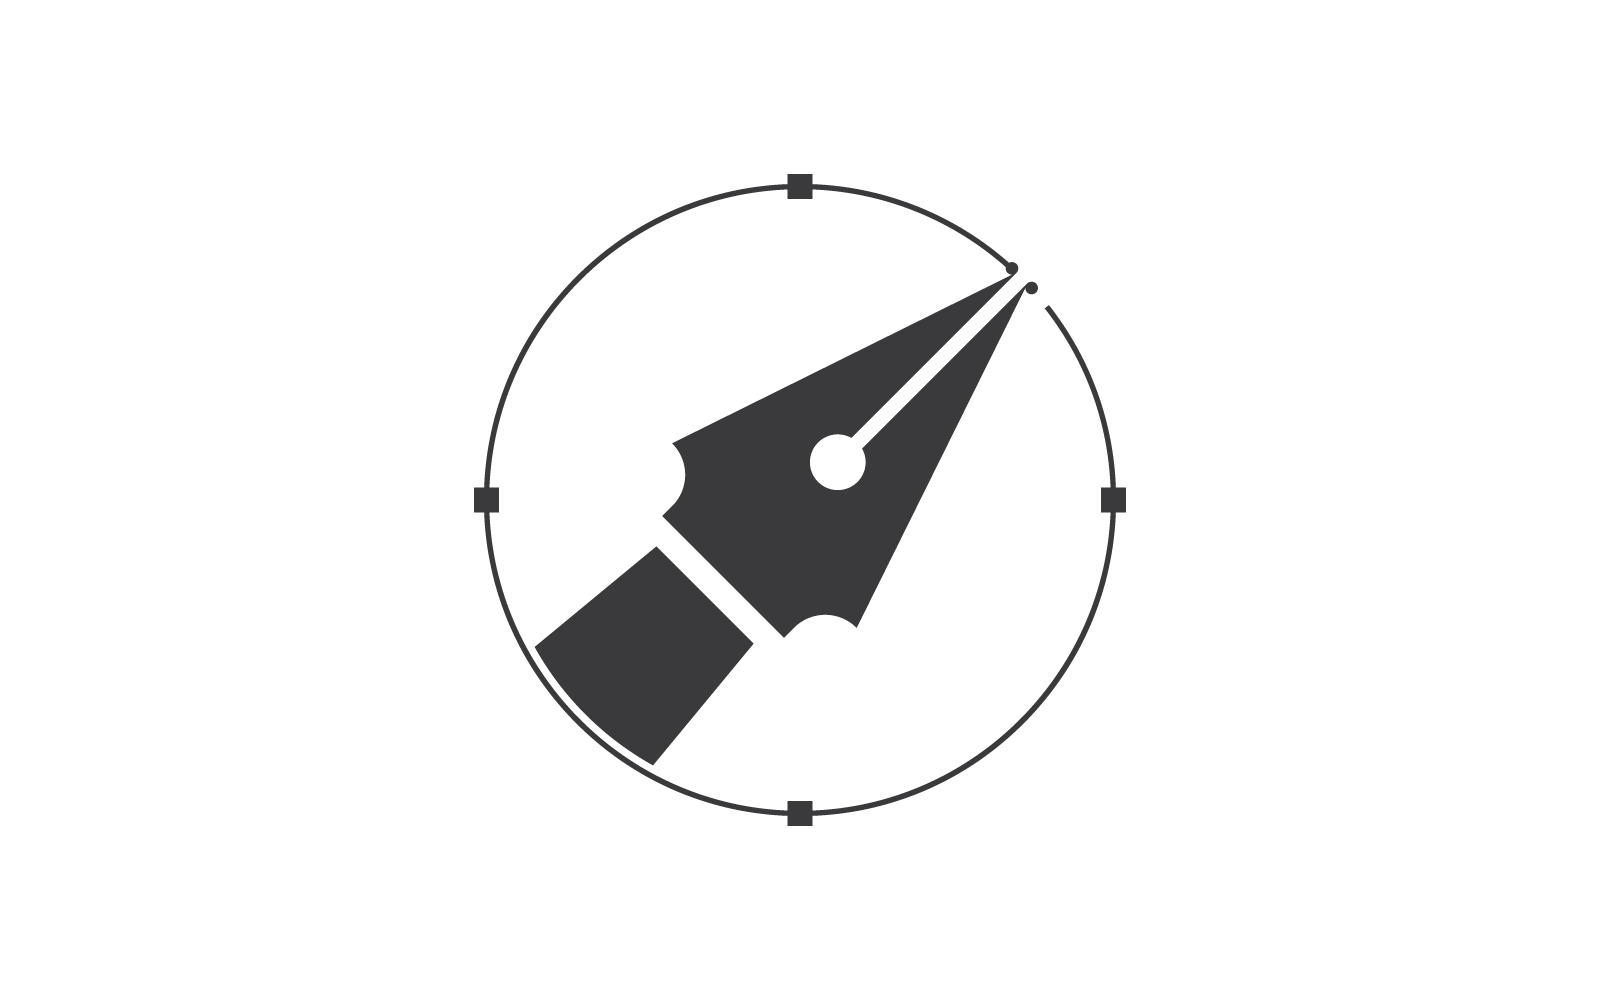 Pen tool icon flat design vector